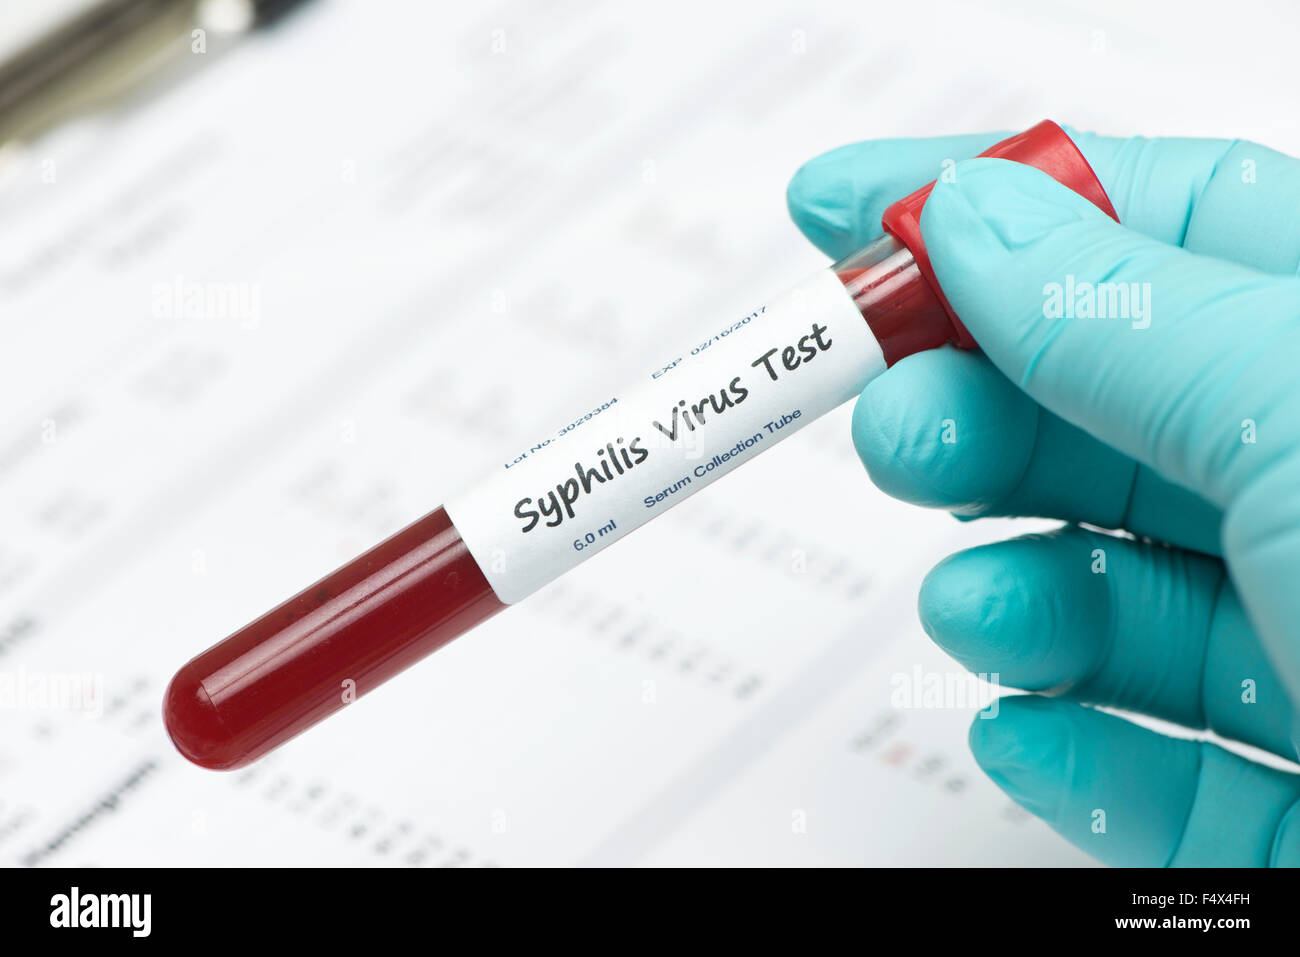 Sífilis virus tubo de recogida de muestras de sangre celebrada por técnico con informe de laboratorio. La etiqueta es ficticio, números de serie son aleatorias Foto de stock